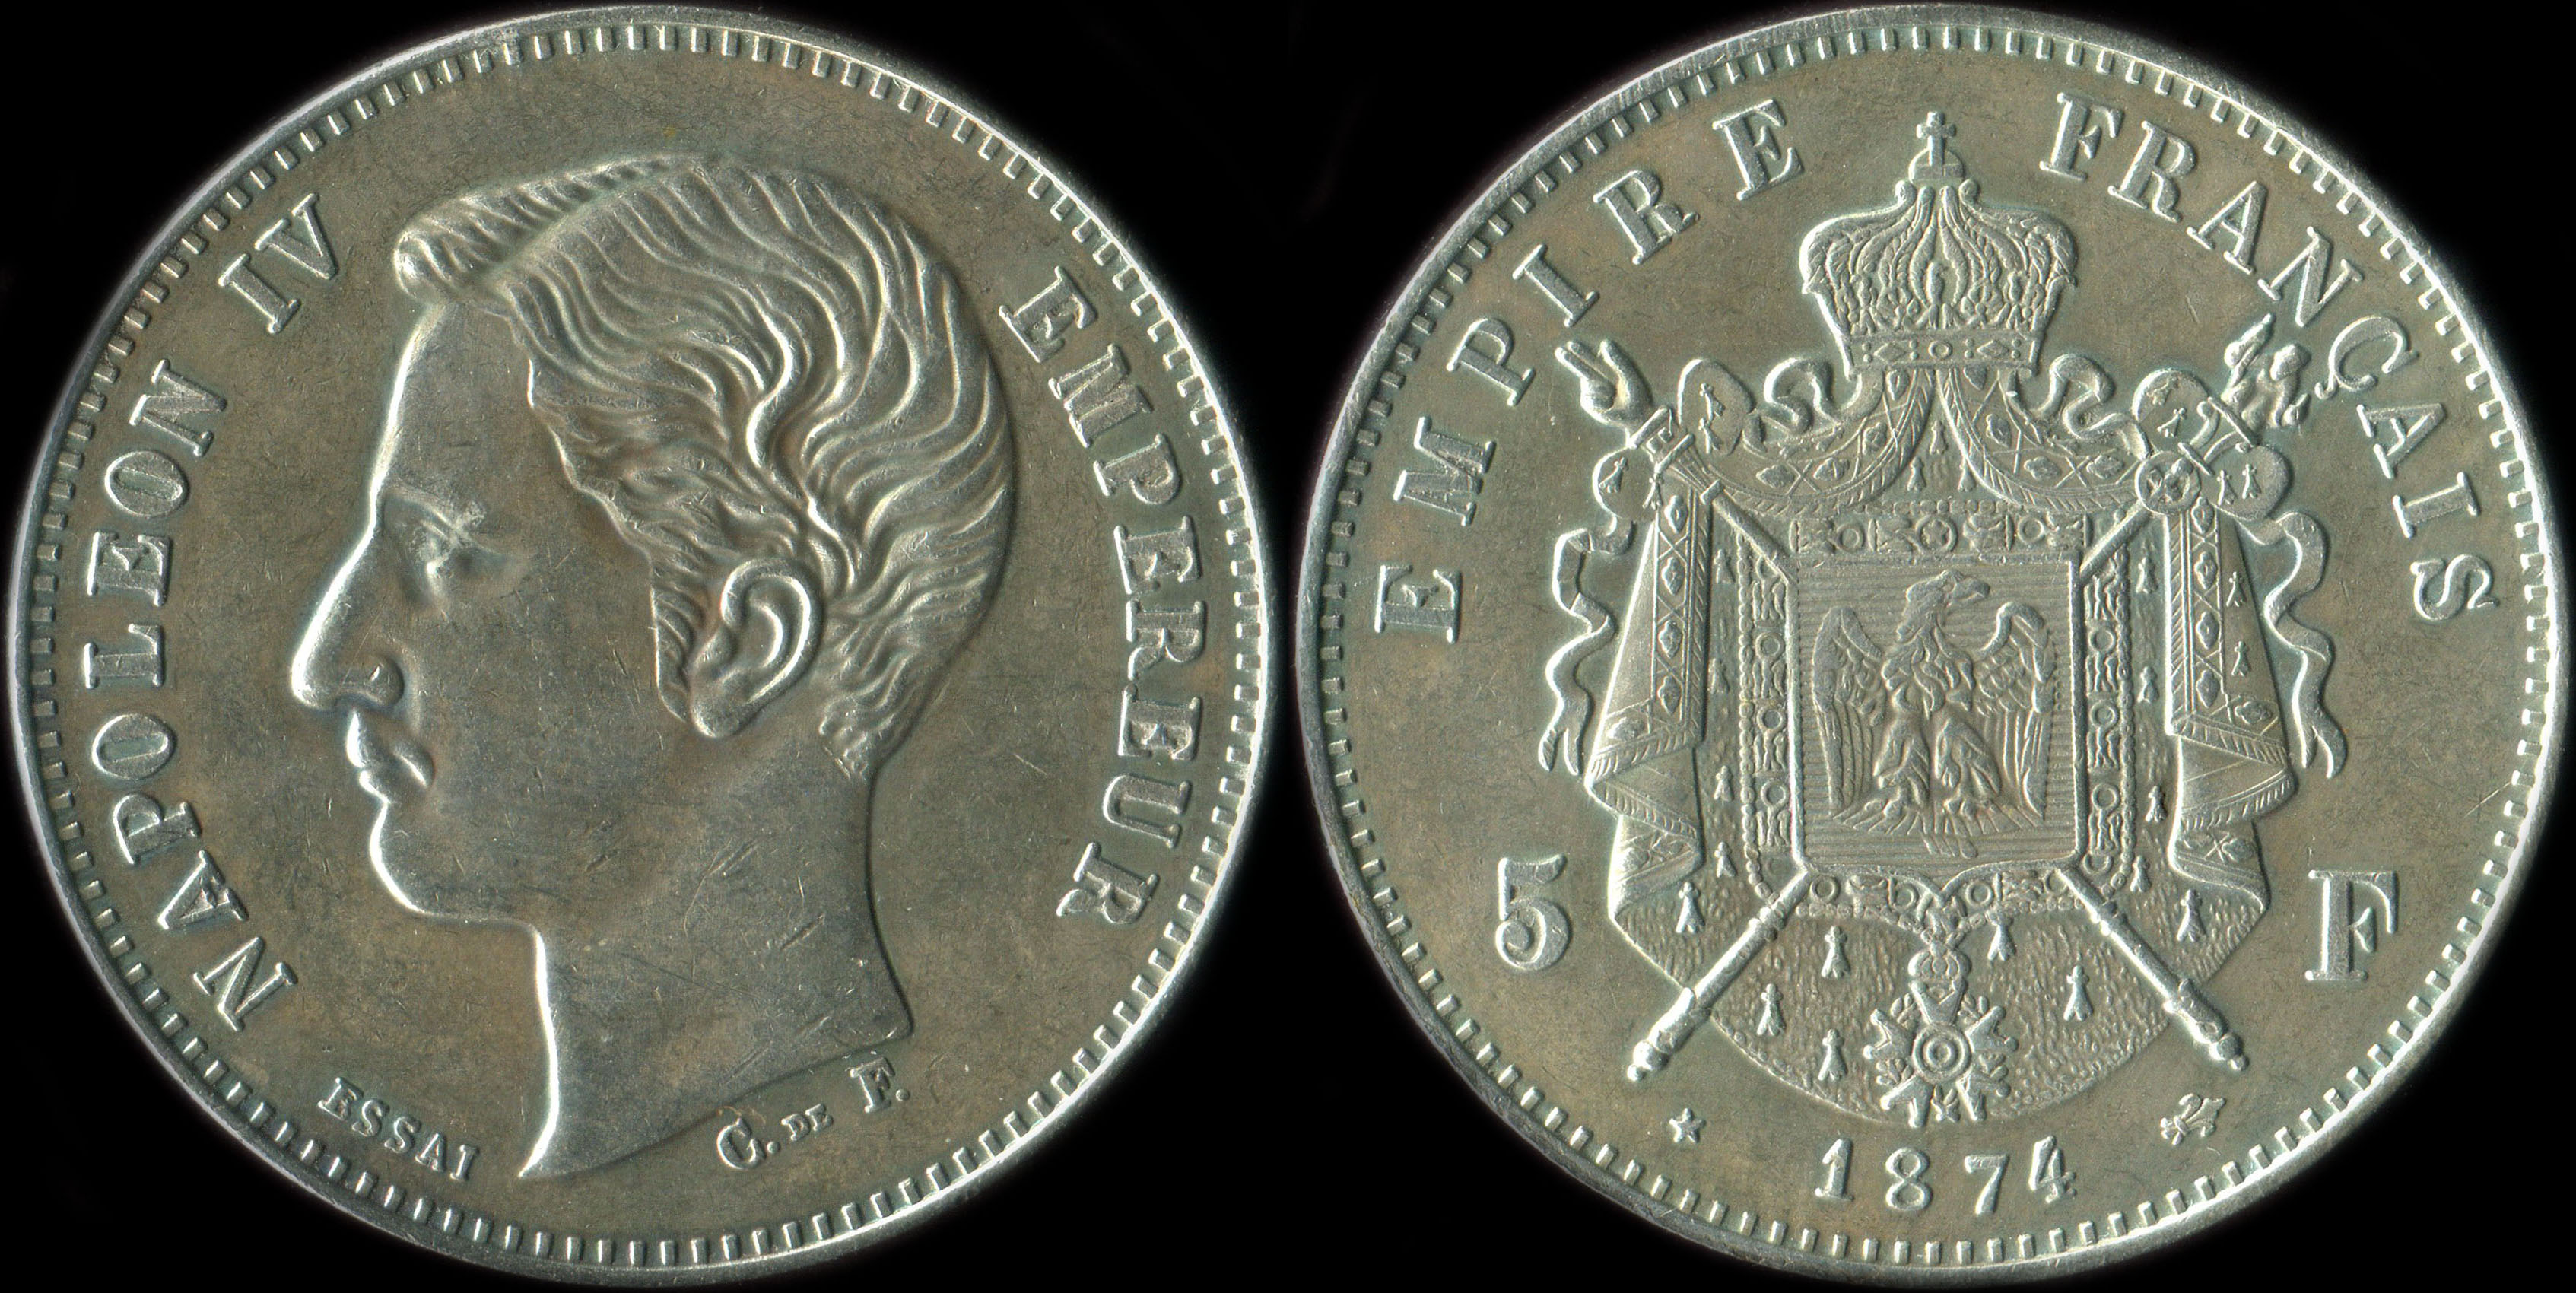 Fausse pice de 5 francs Napolon IV Empereur 1874 essai